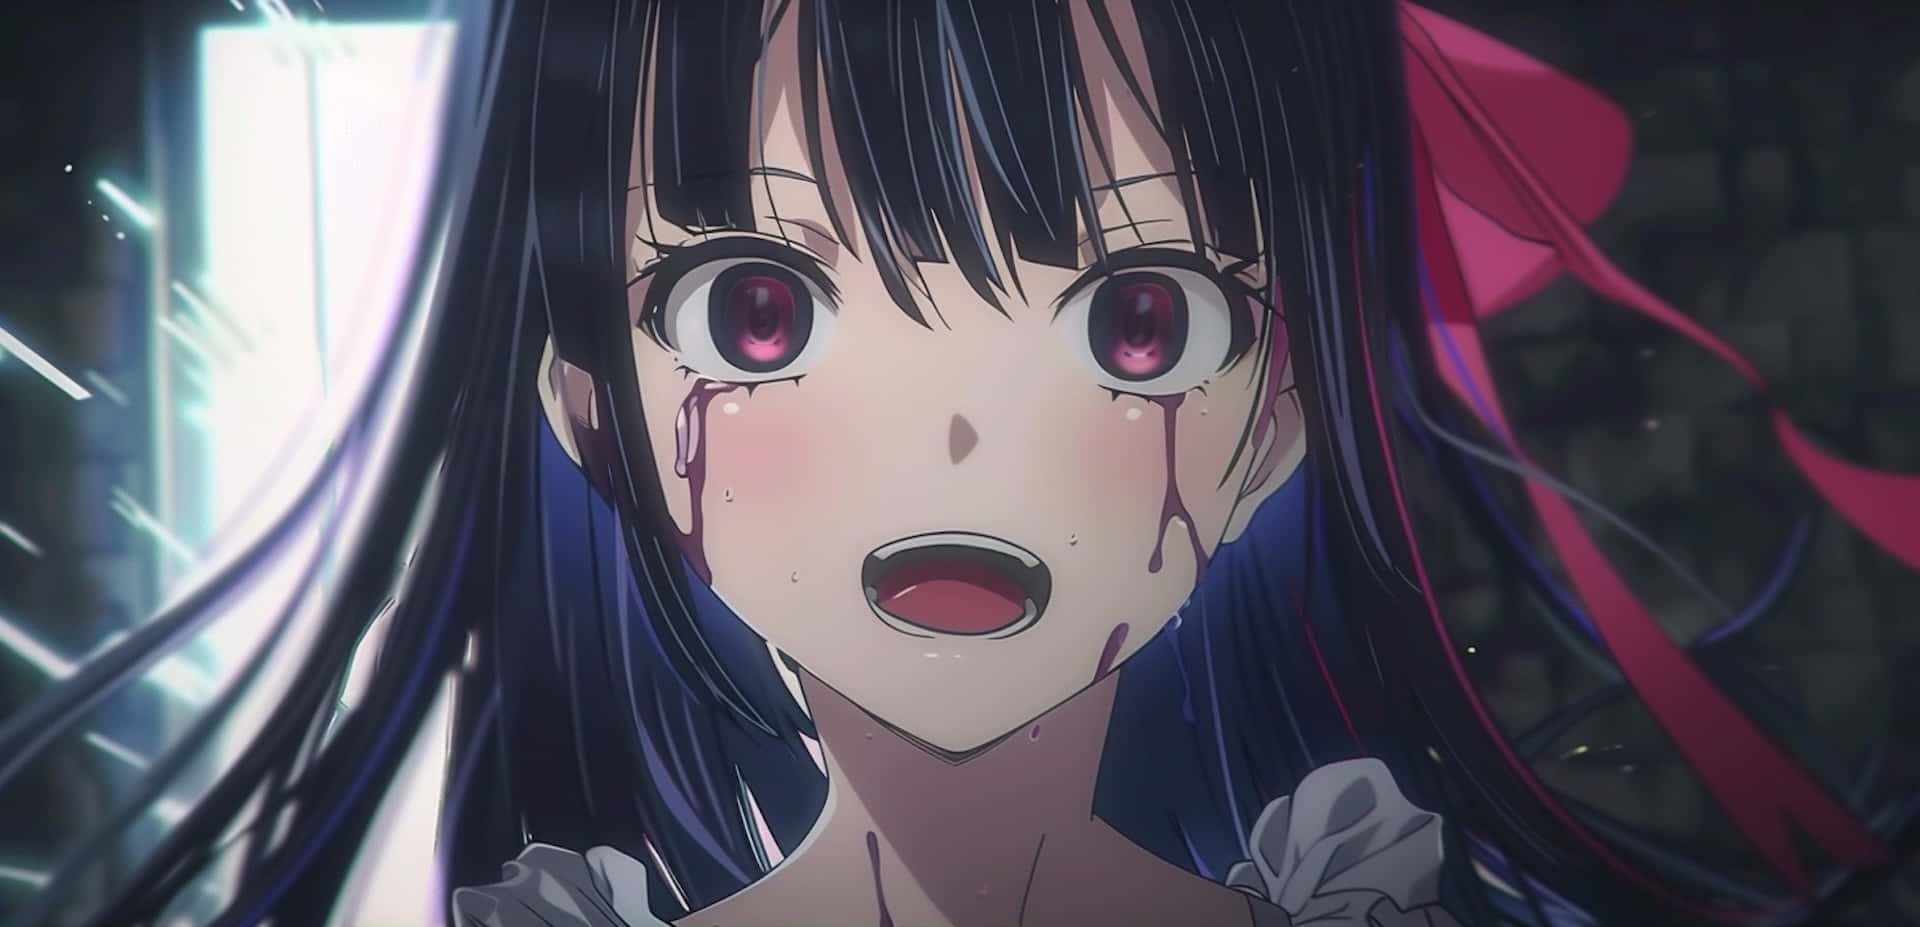 Shocked Anime Girlwith Red Eyes Wallpaper